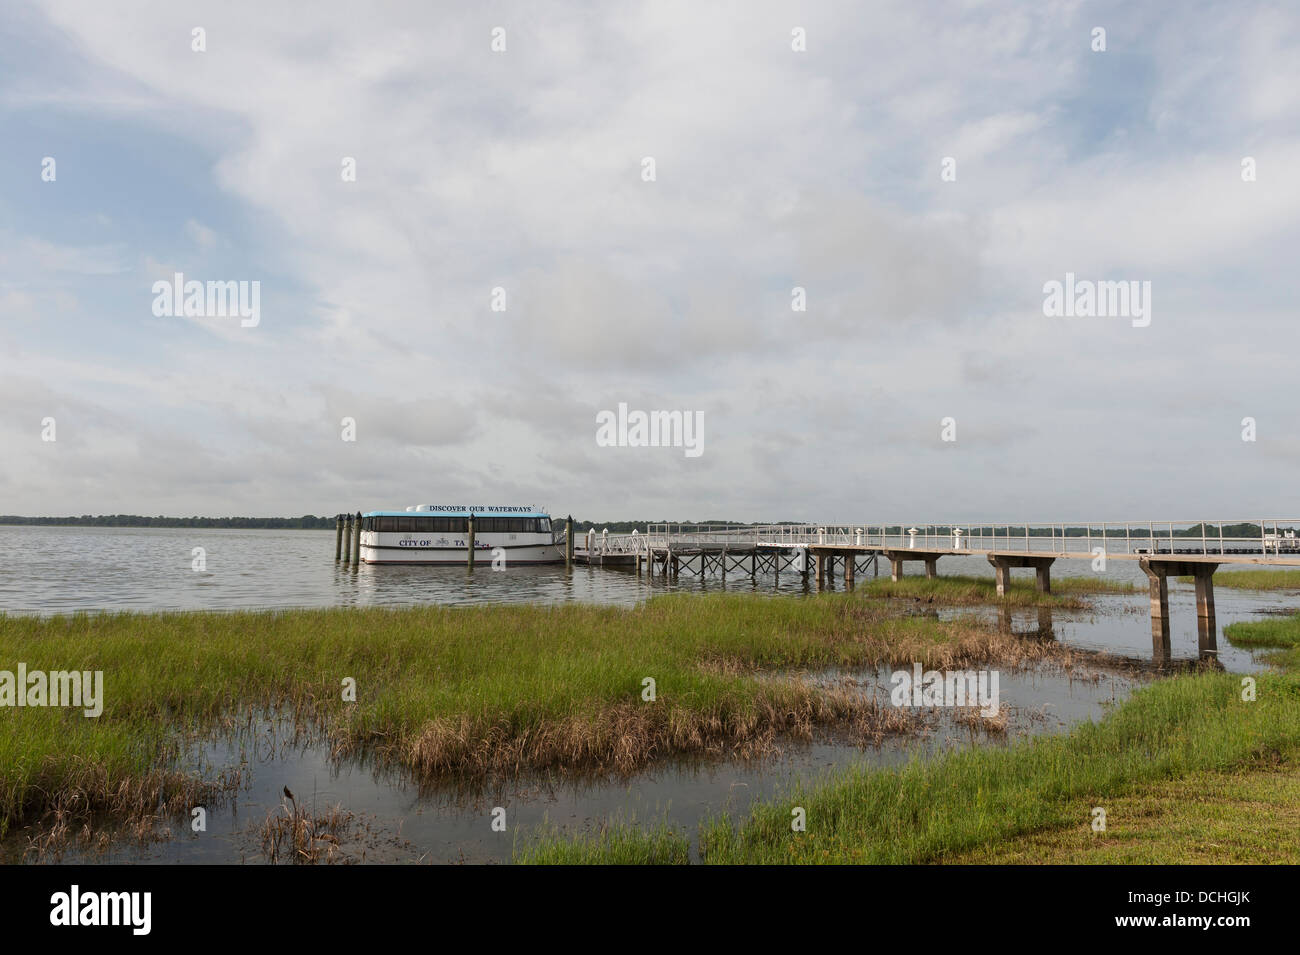 Entdecken Sie unsere Wasserstraßen-Bootstour in die Stadt Tavares, in Lake County Florida USA Stockfoto